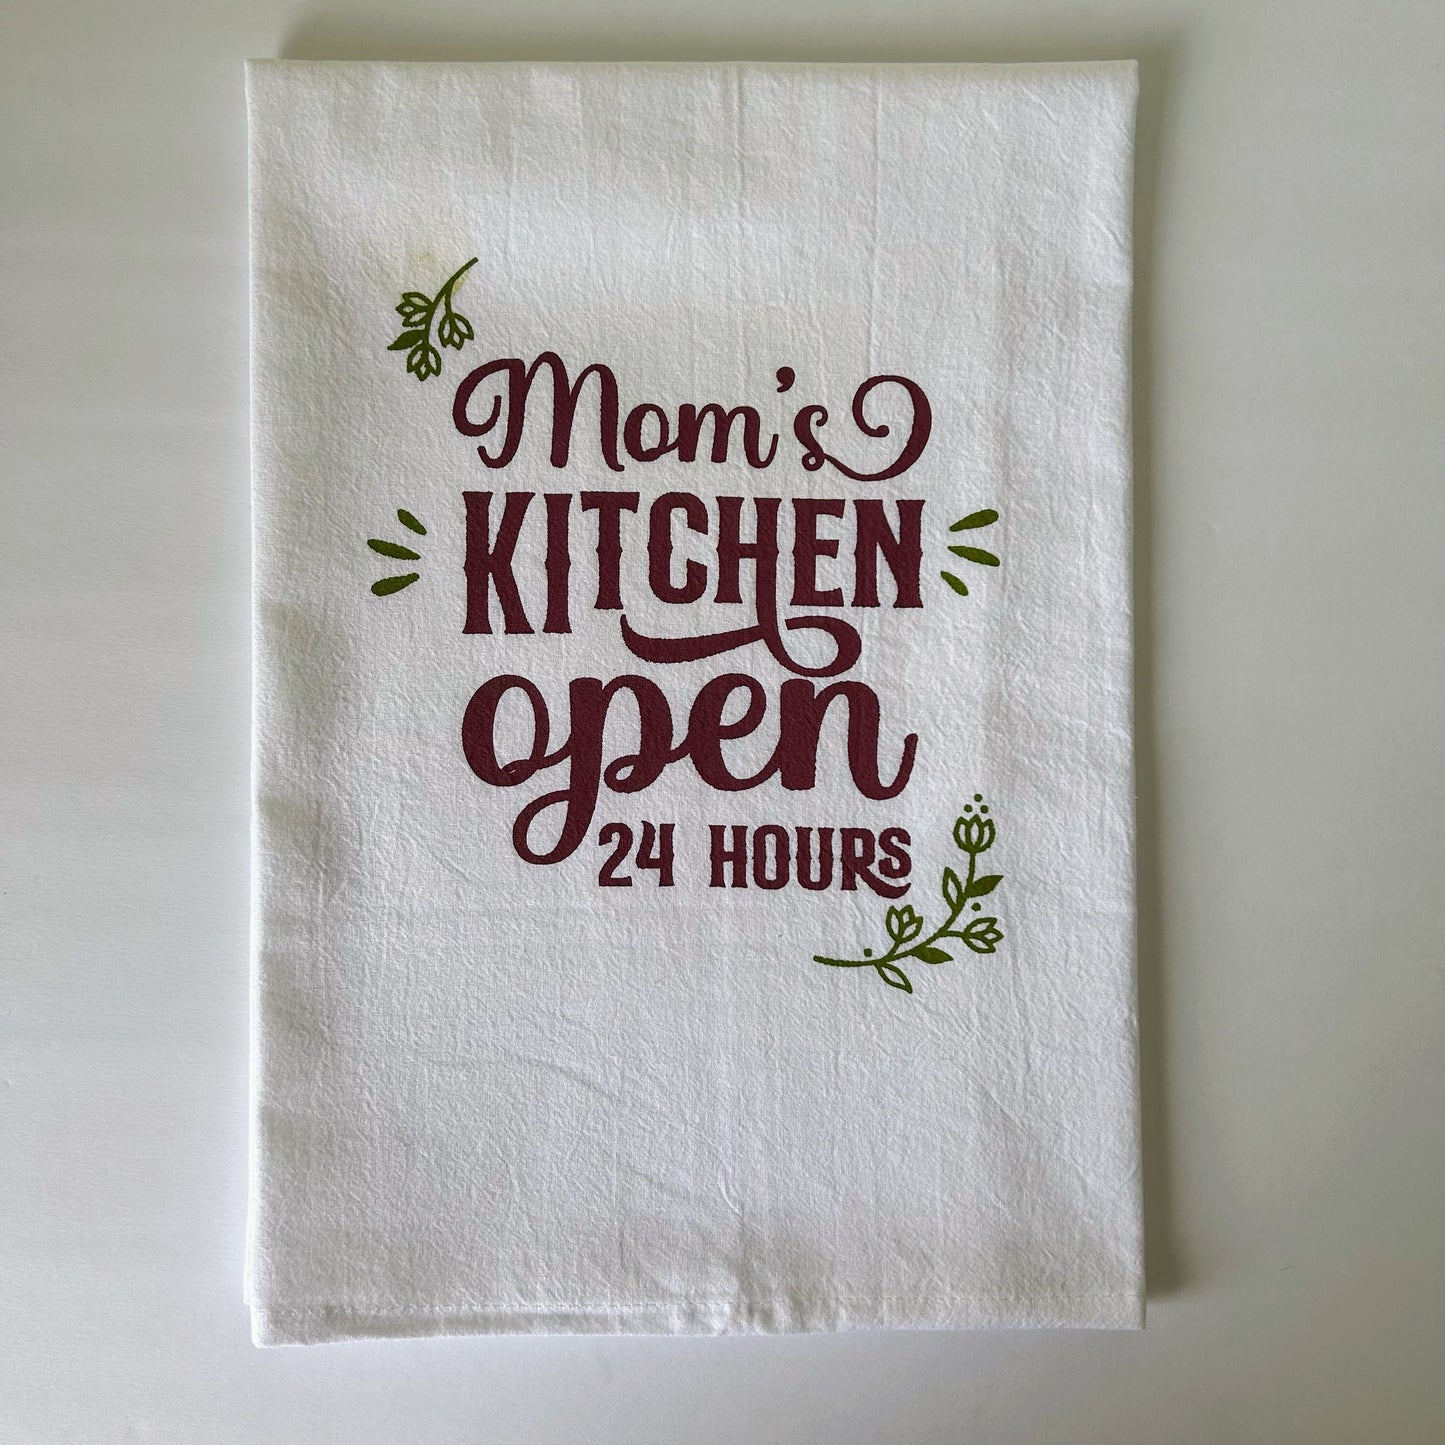 Mom’s Kitchen